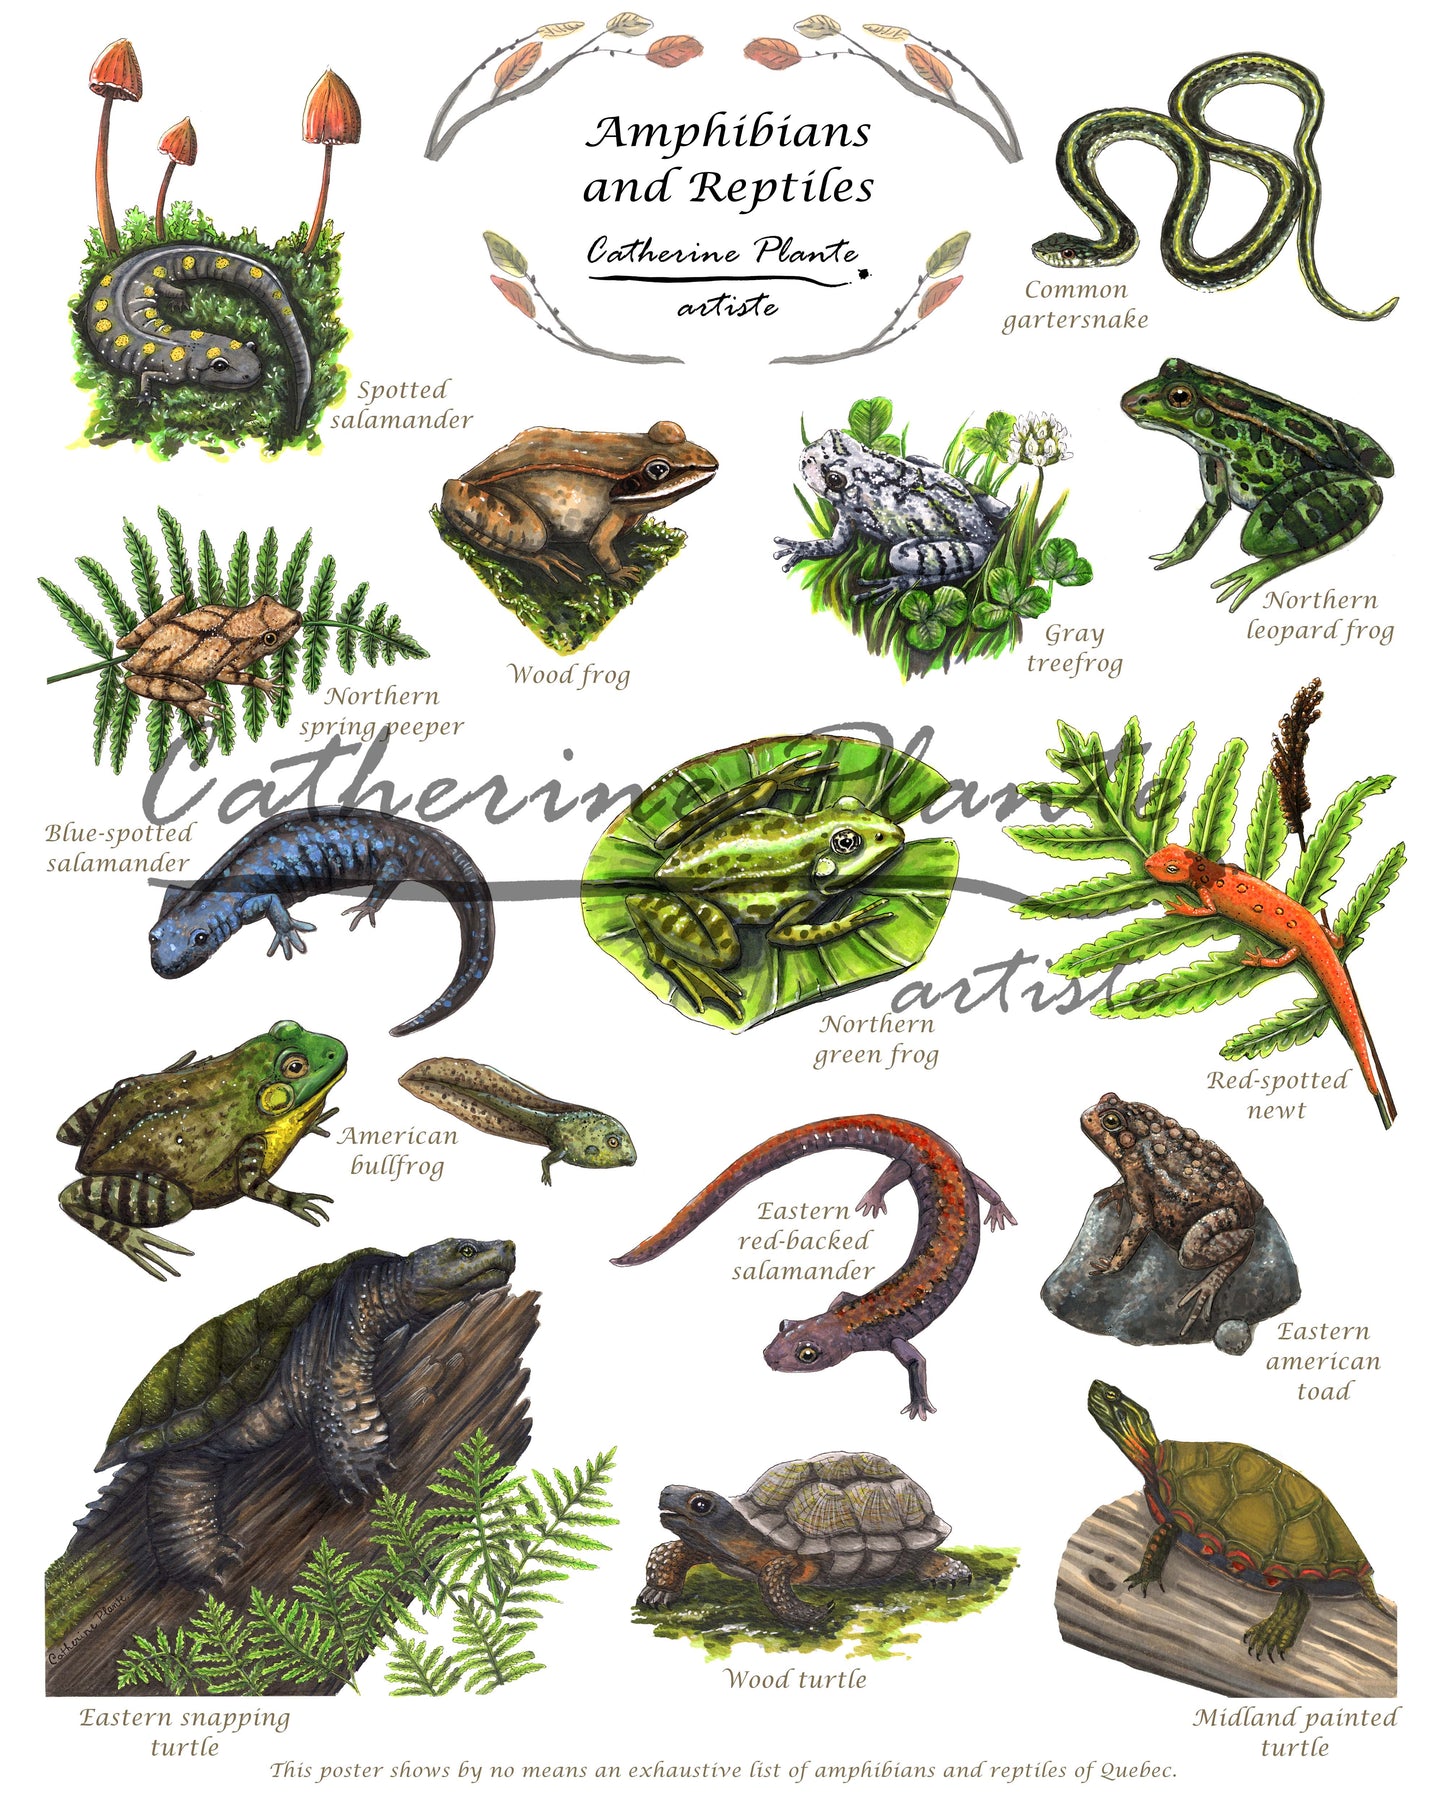 Affiche éducative - Les amphibiens et les reptiles